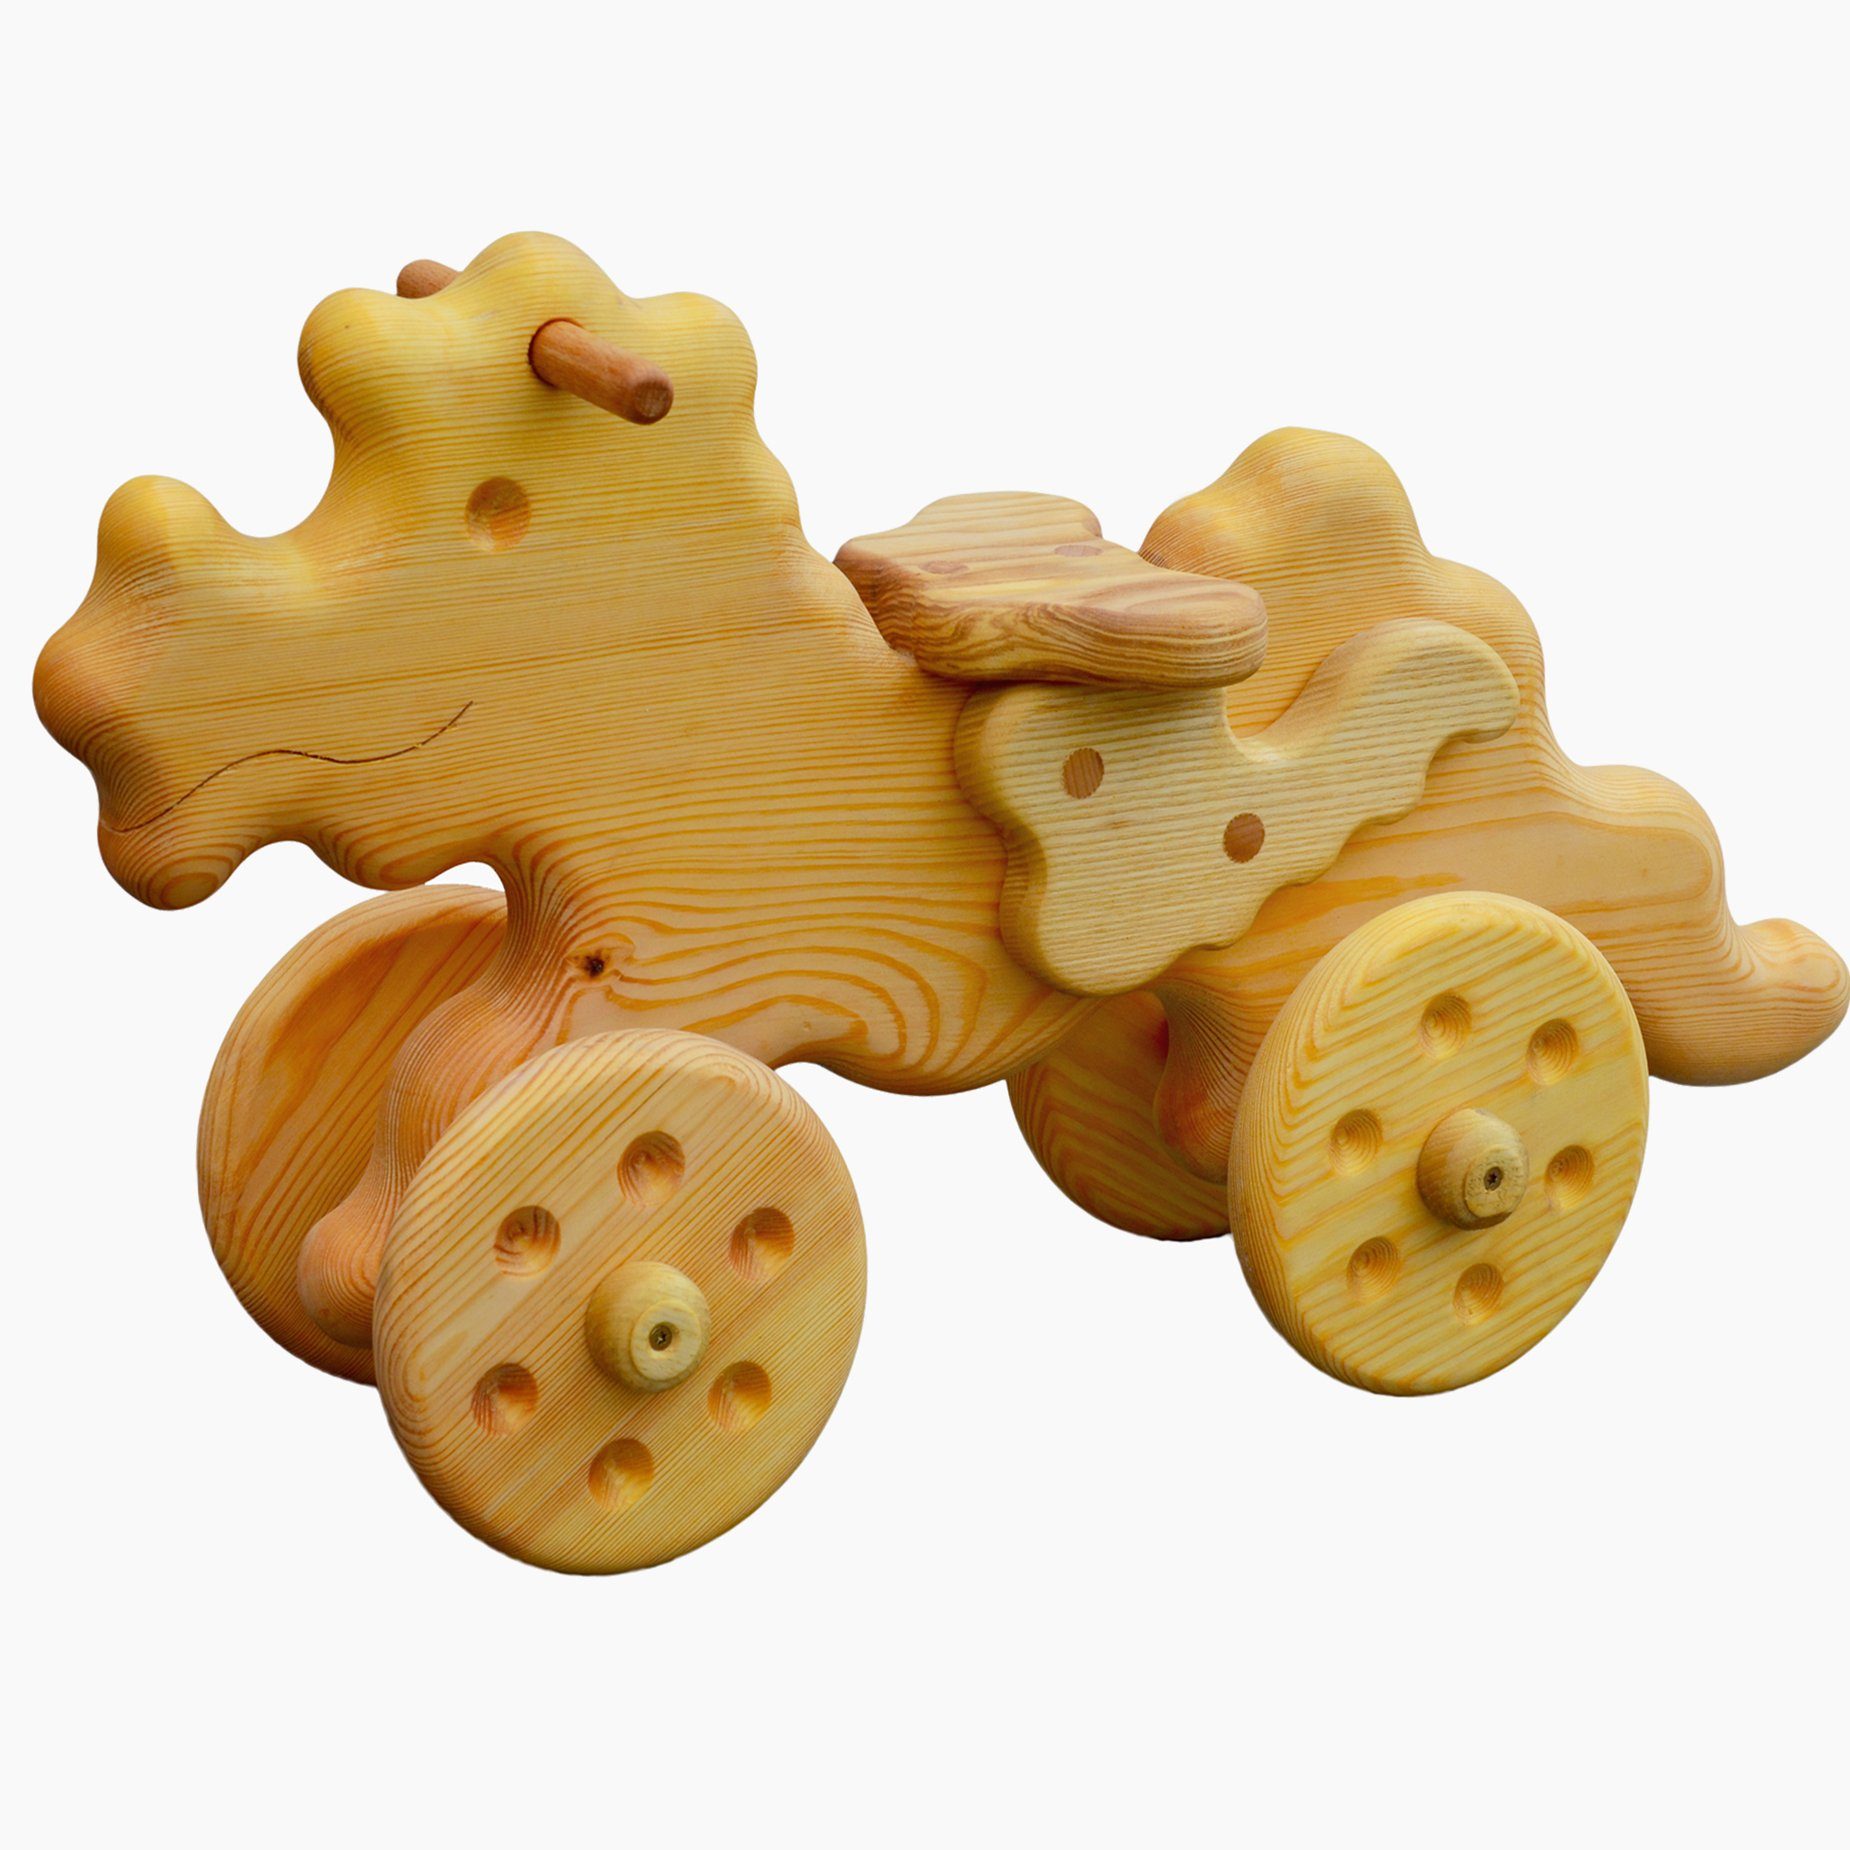 Madera Spielzeuge Laufrad Madera Laufdrache Kiefernholz, Made in Germany, für Kinder ab 18 Monate geeignet